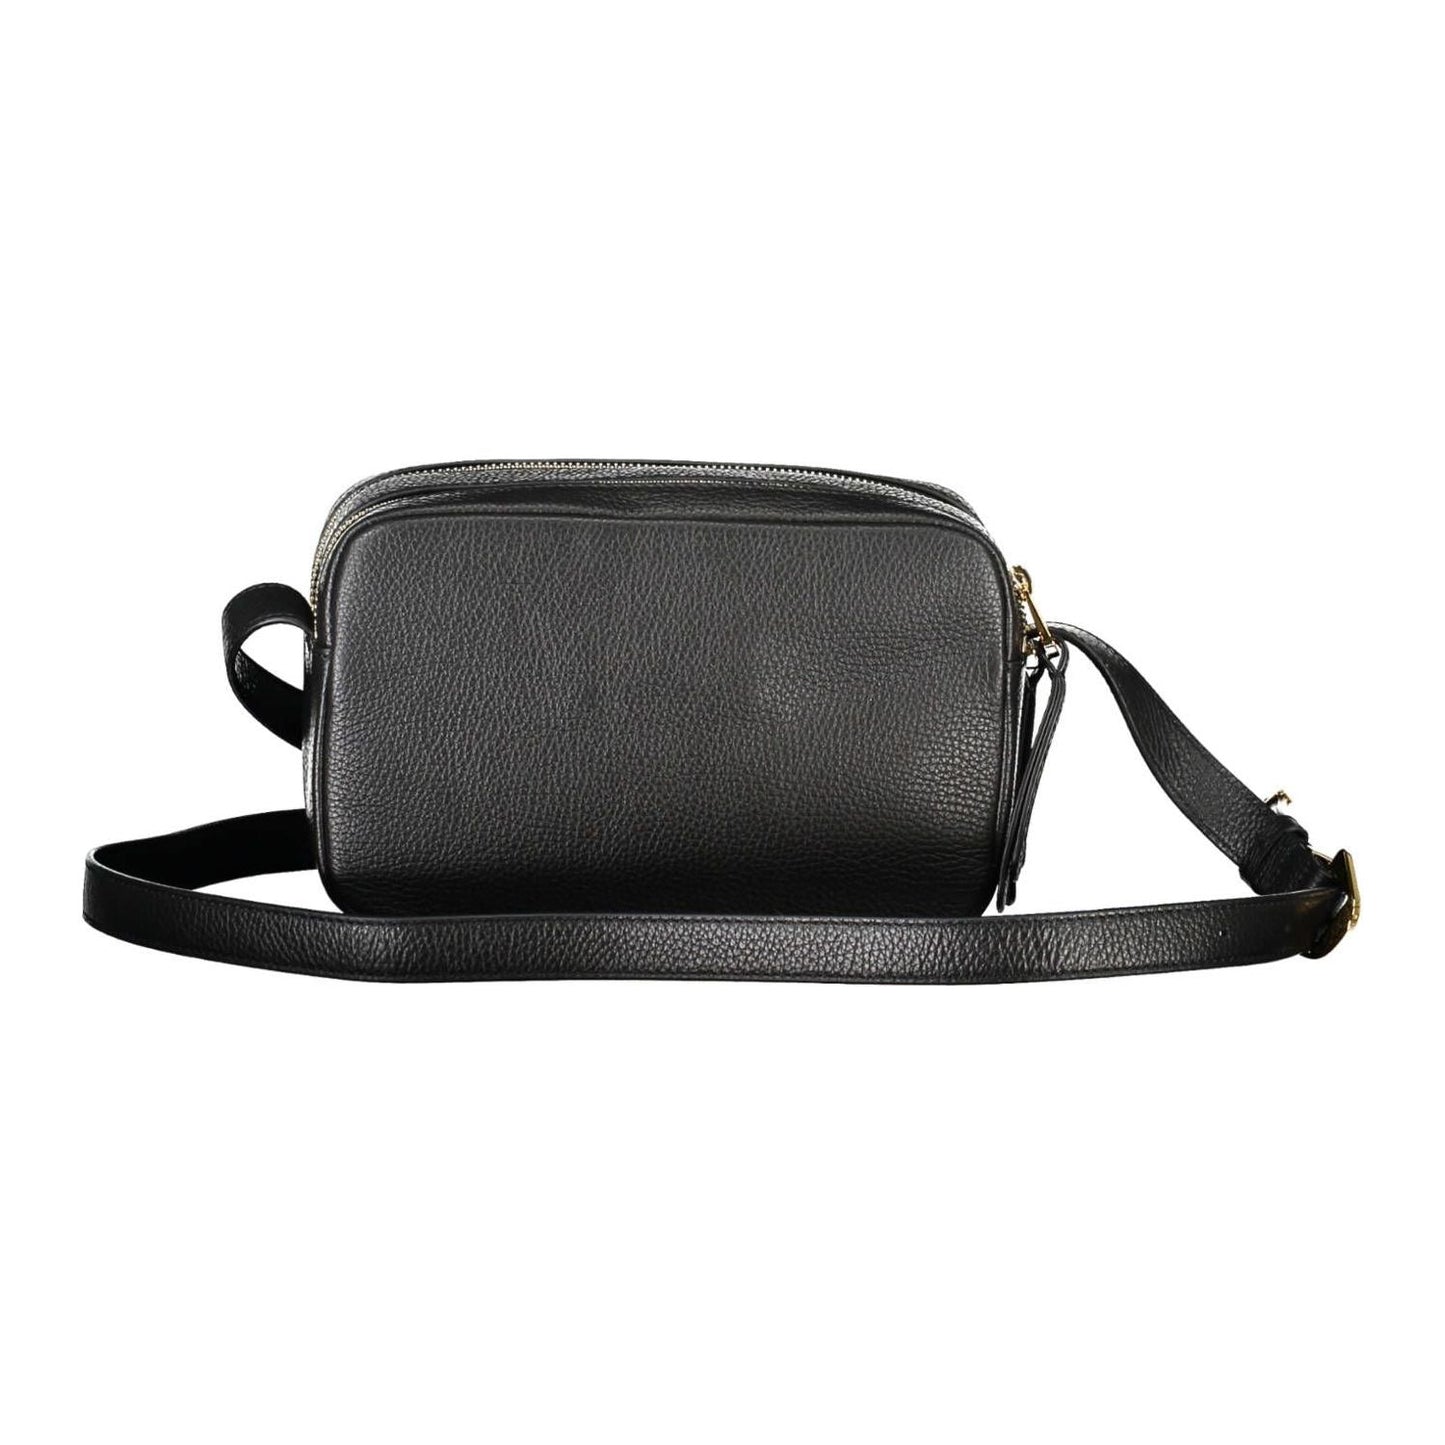 CoccinelleElegant Black Leather Shoulder Bag with LogoMcRichard Designer Brands£259.00